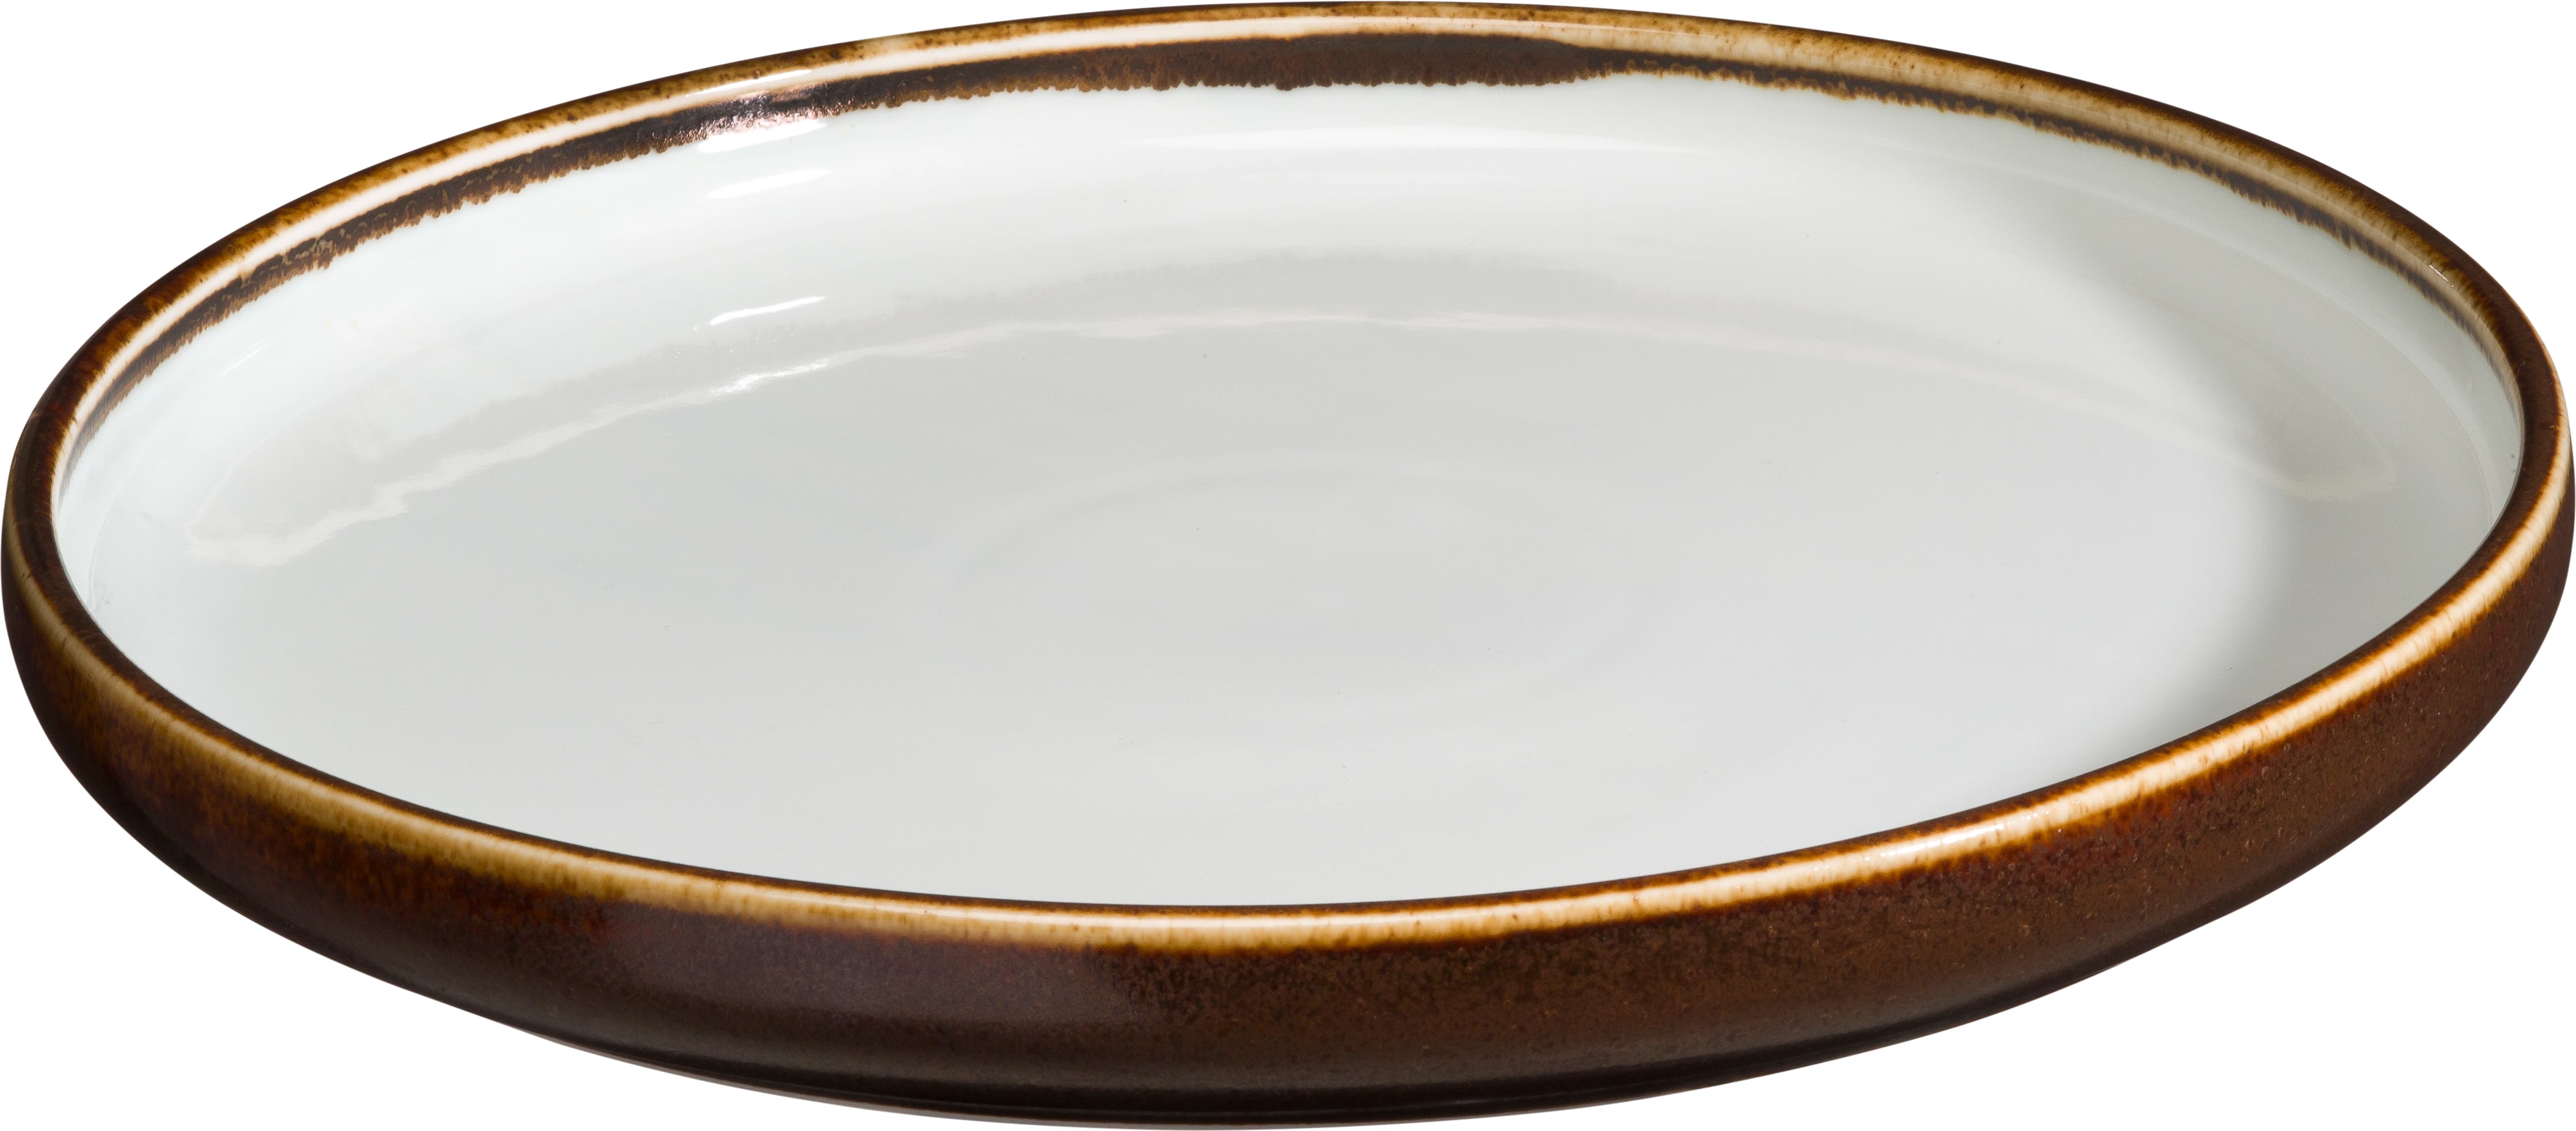 Saga tallerken uden fane, hvid/brun, ø29,5 cm